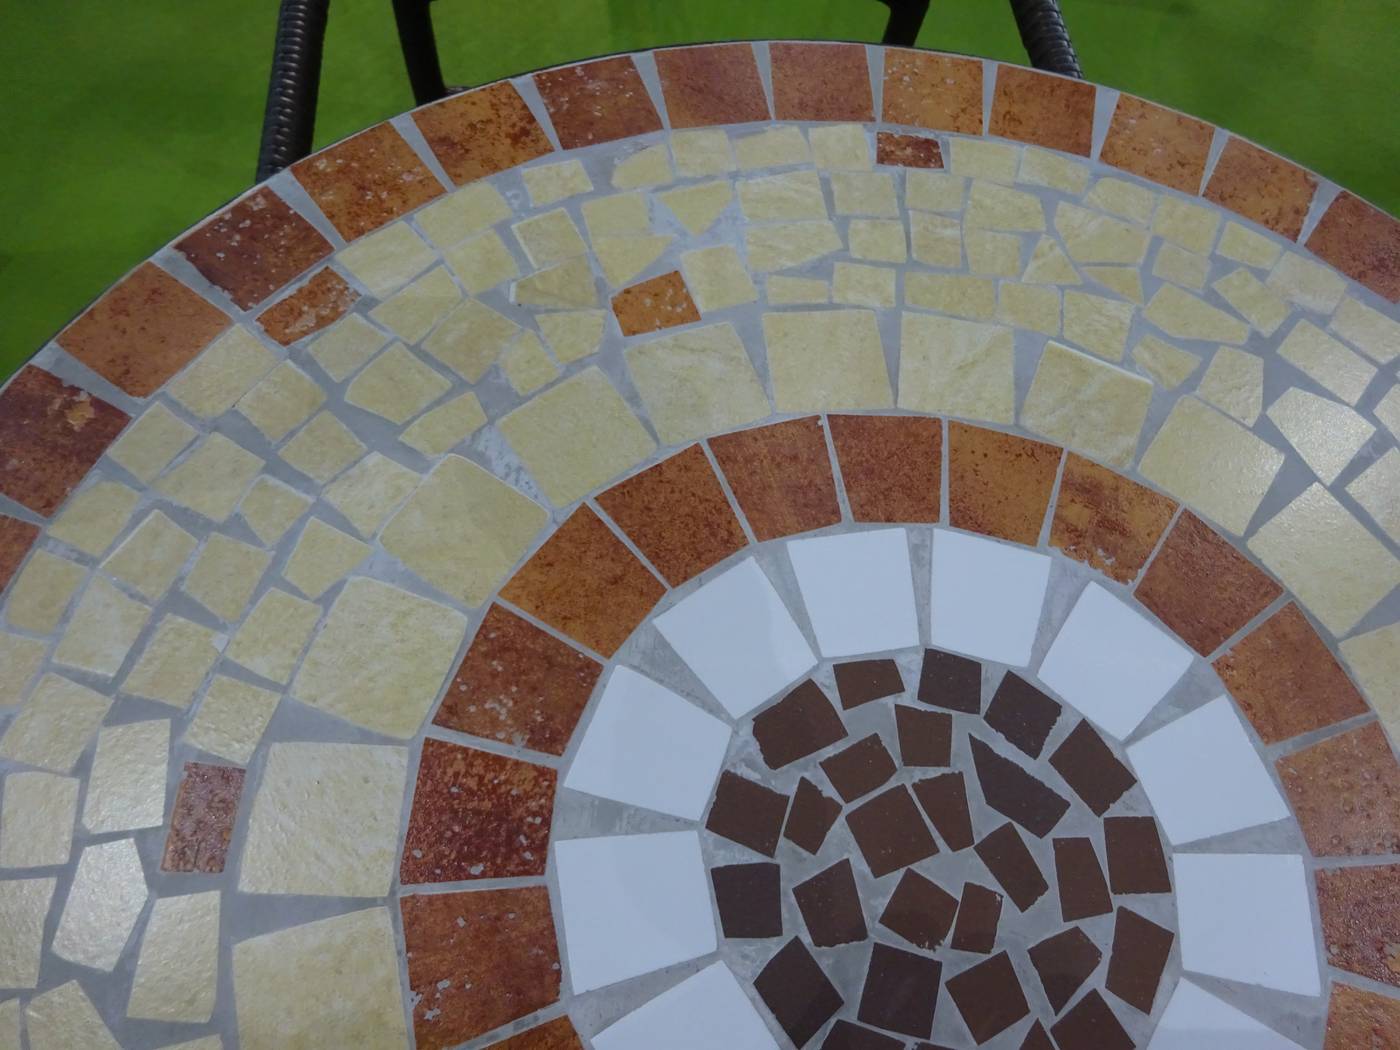 Set Mosaico Claire-Flandes 75-2 - Conjunto mosaico para jardín o terraza: 1 mesa mosaico redonda + 2 sillones de ratán sintético + 2 cojines